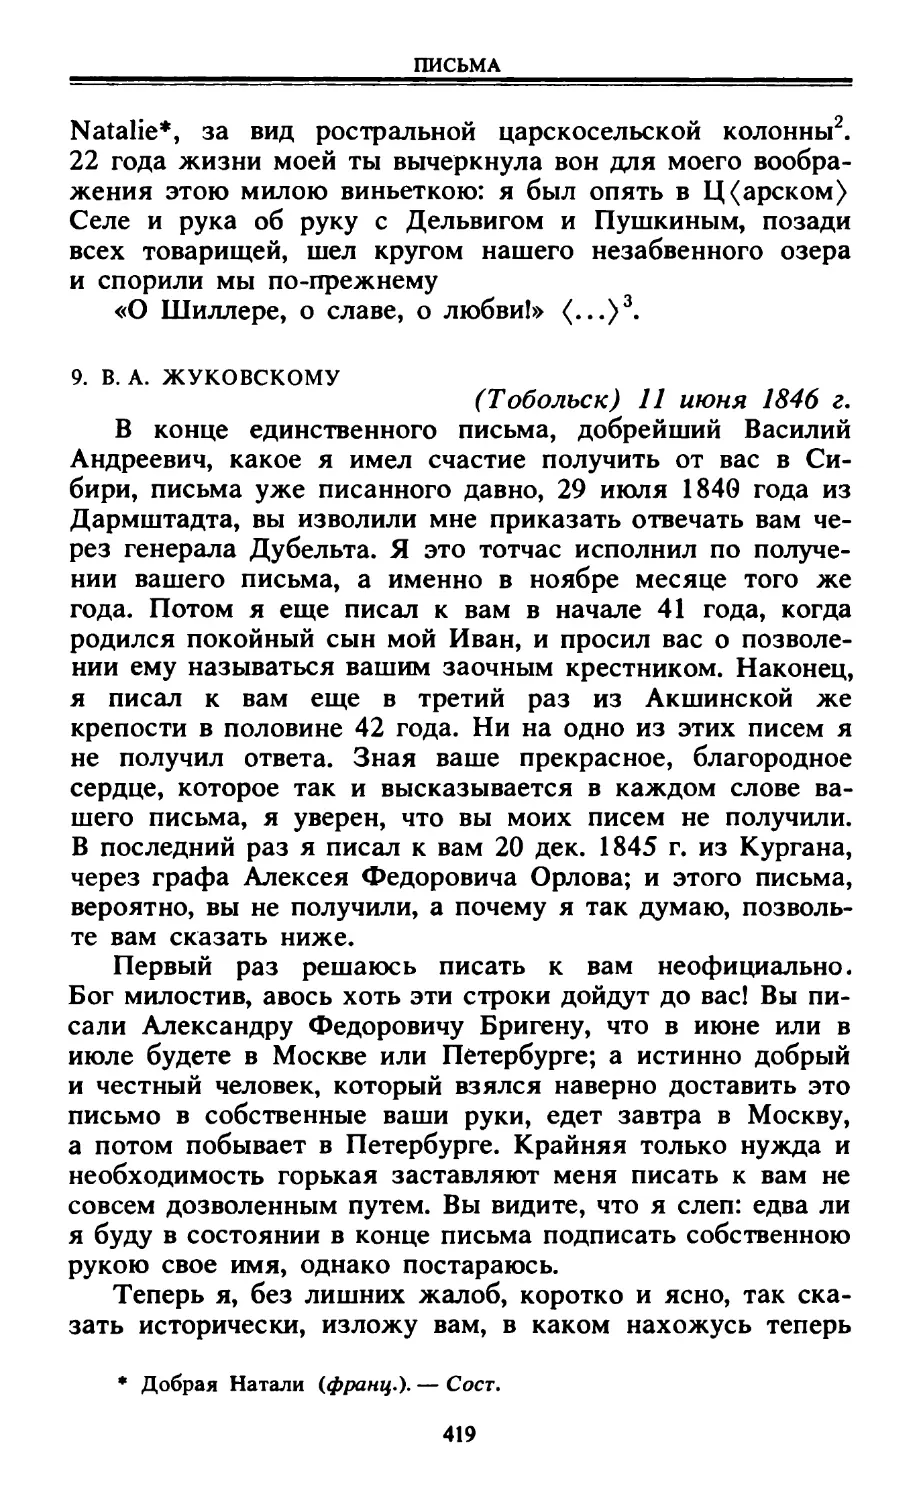 9. В. А. Жуковскому. 11 июня 1846 г.